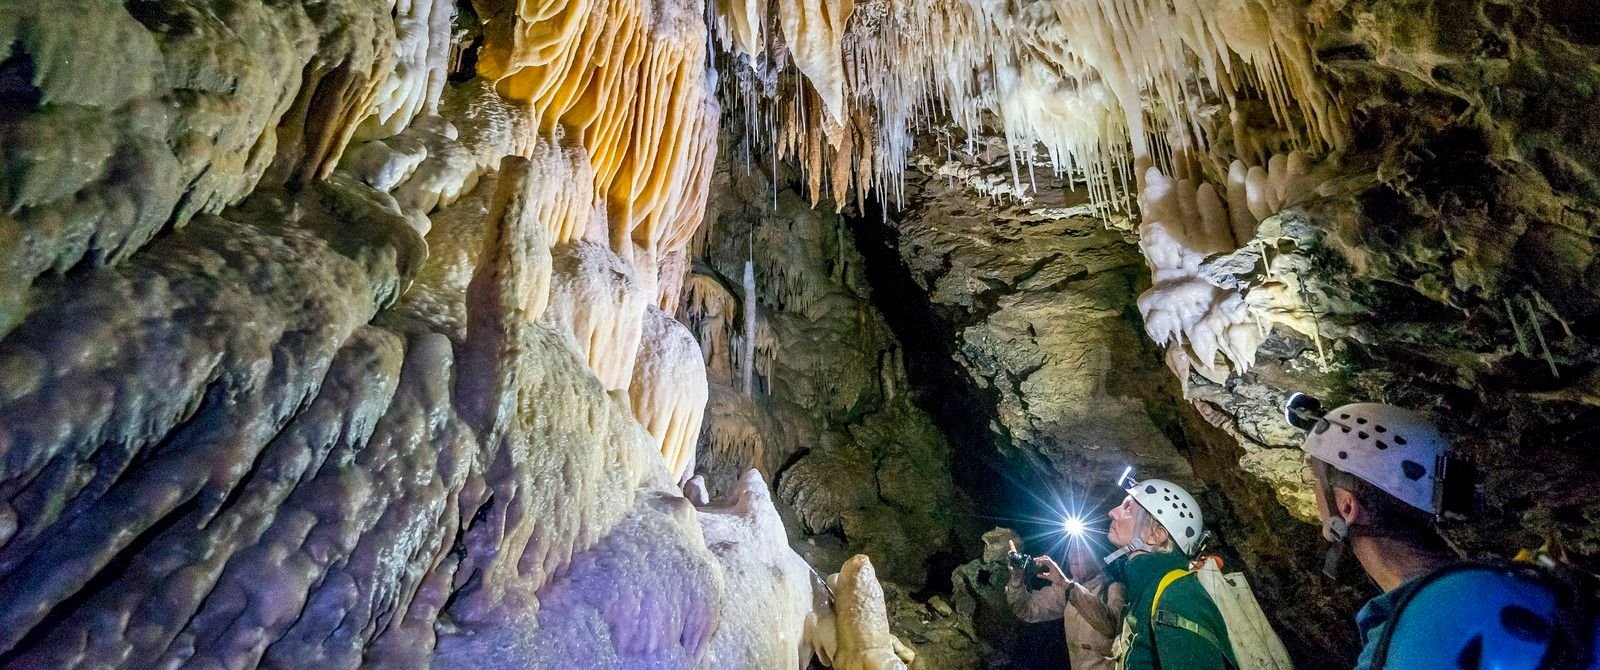 Mole-Creek-caves-Tasmania